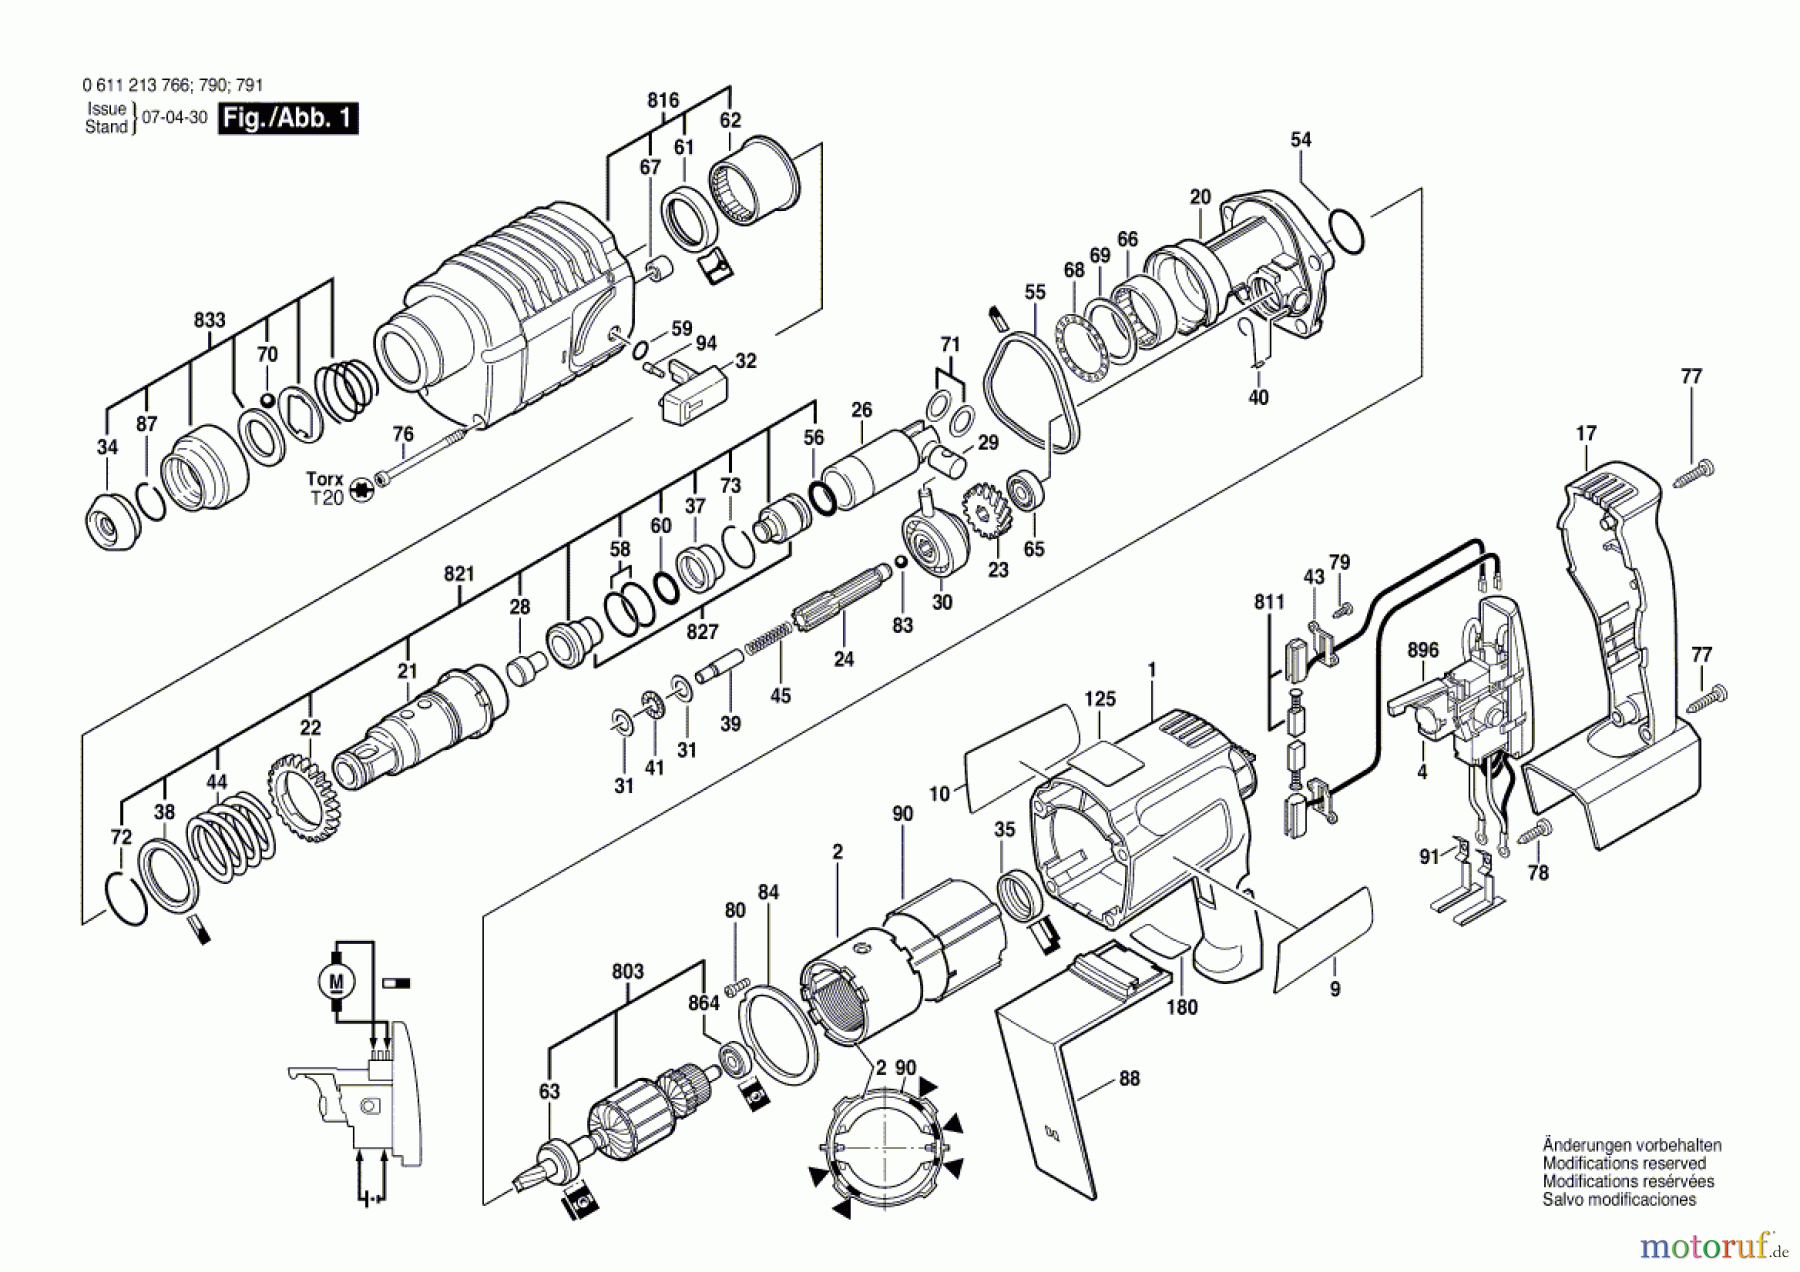  Bosch Akku Werkzeug Gw-Akku-Bohrhammer BRL 524 VE Seite 1